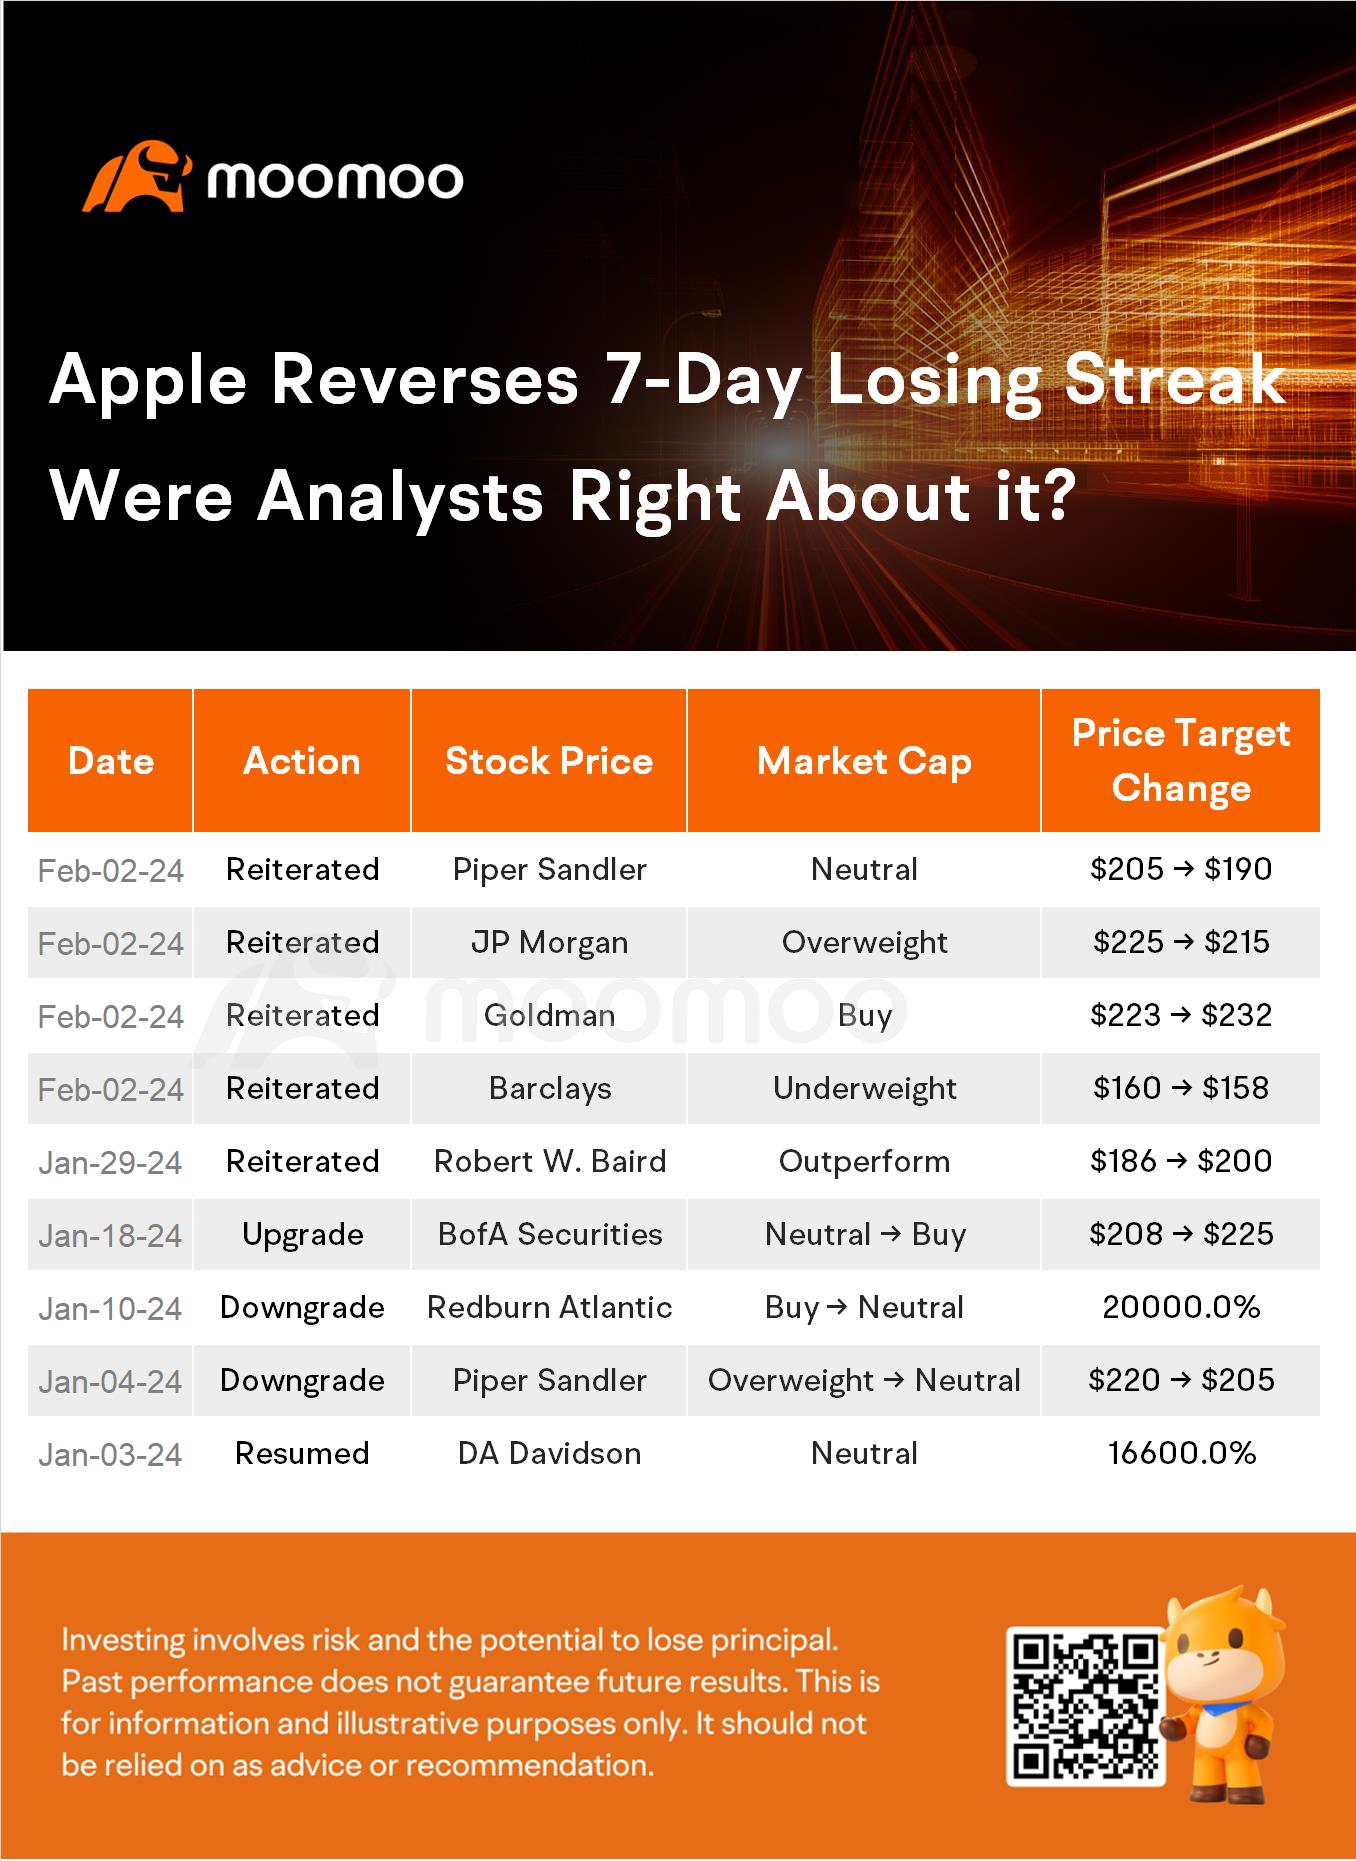 蘋果股票終於結束其連續虧損。以下是分析師認為接下來會發生的事情